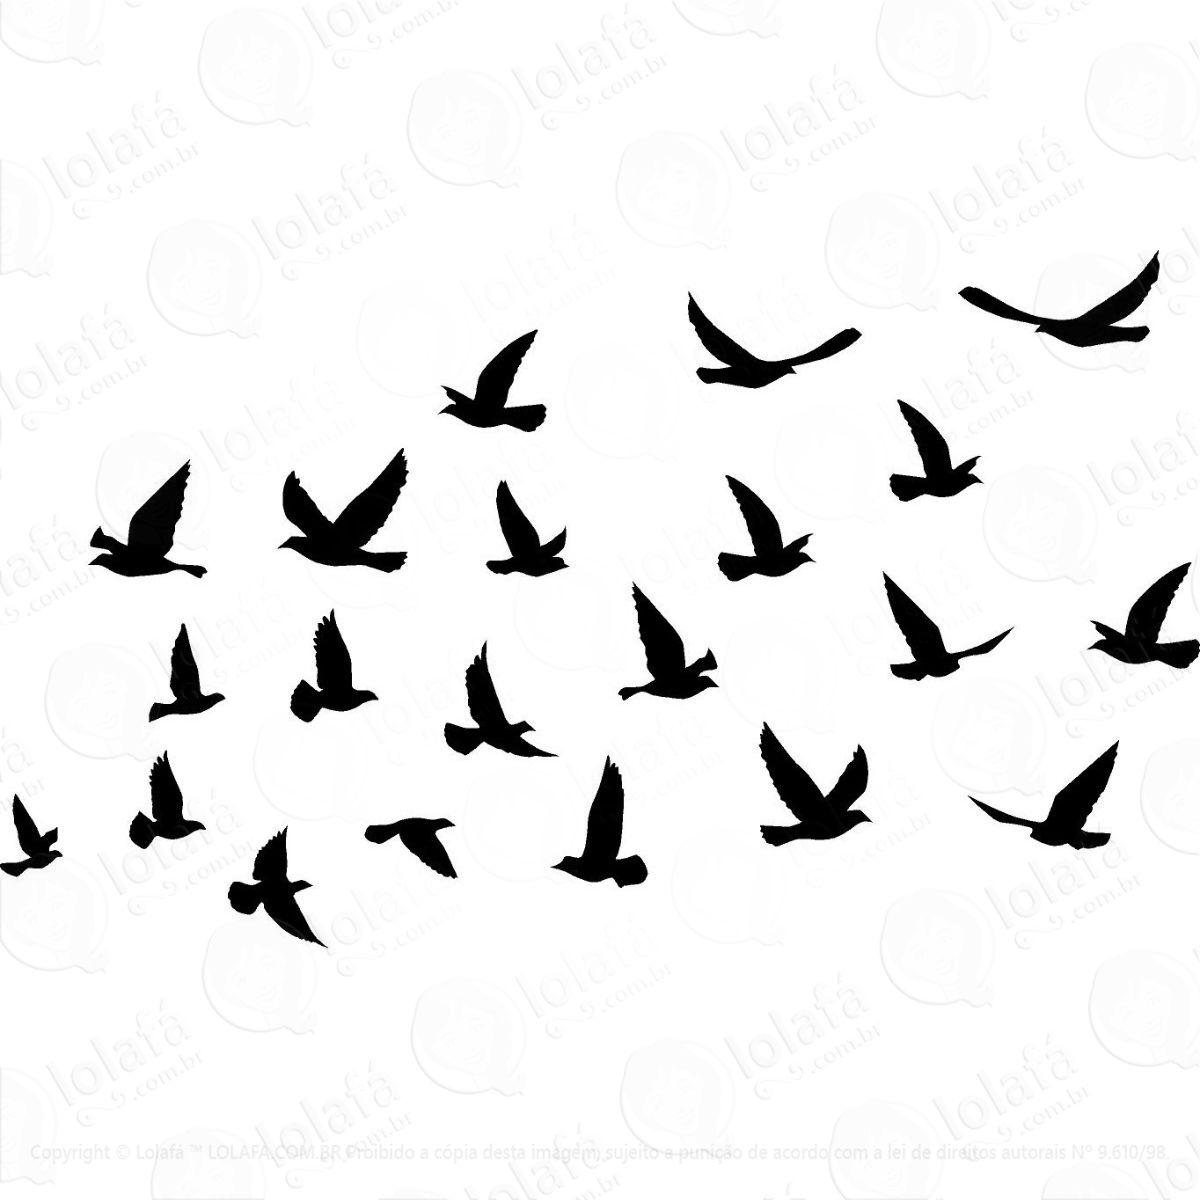 adesivo decorativo pássaros e folhas mod:1320